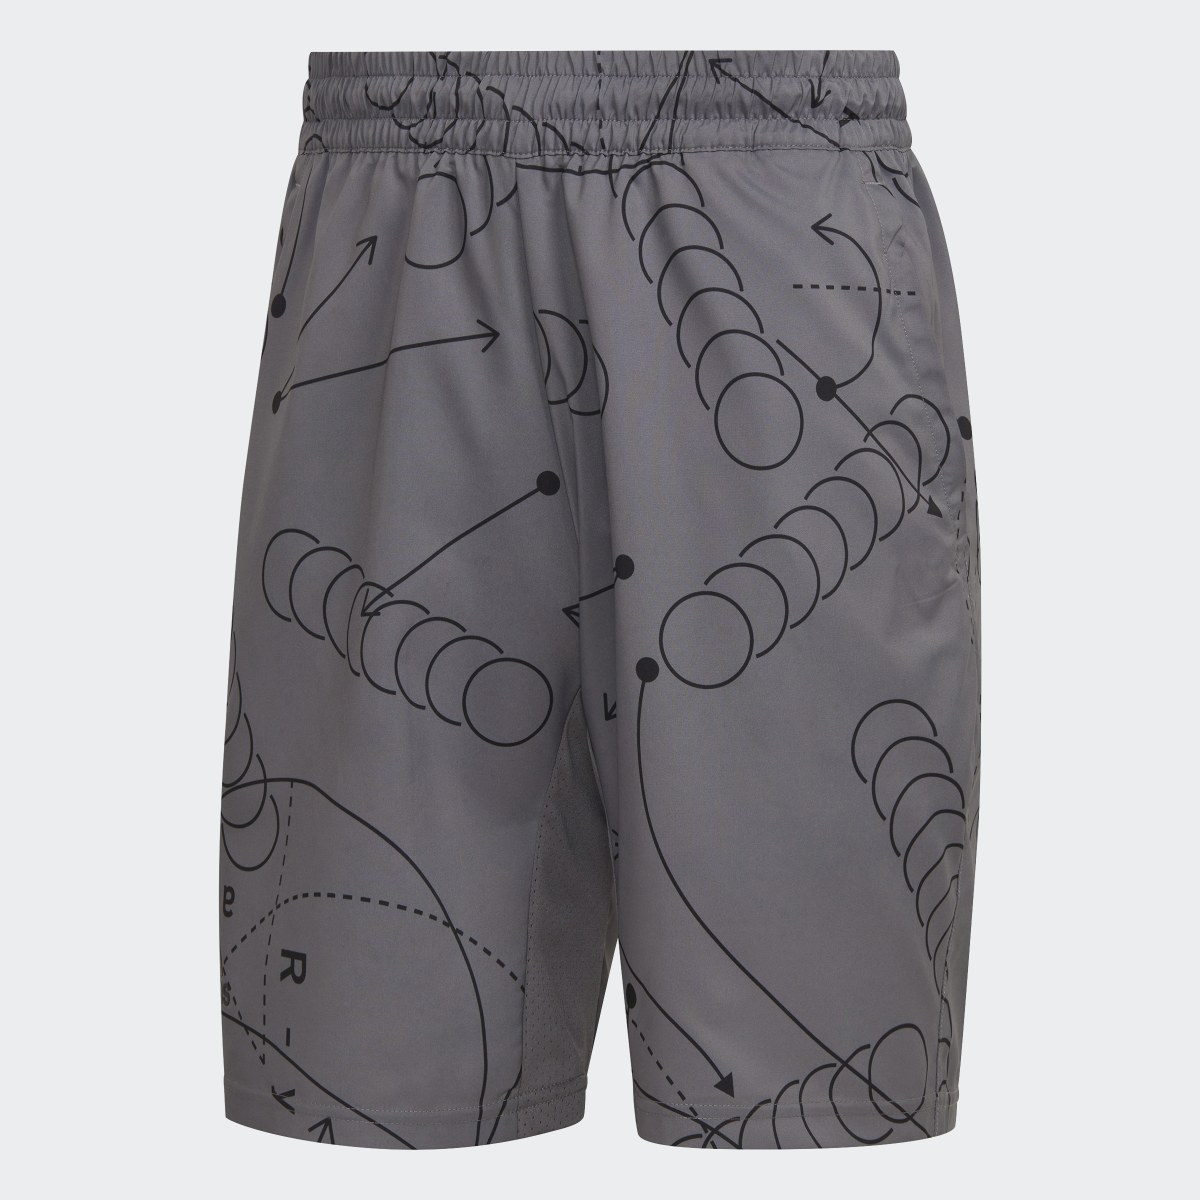 Adidas Club Graphic Tennis Shorts. 4